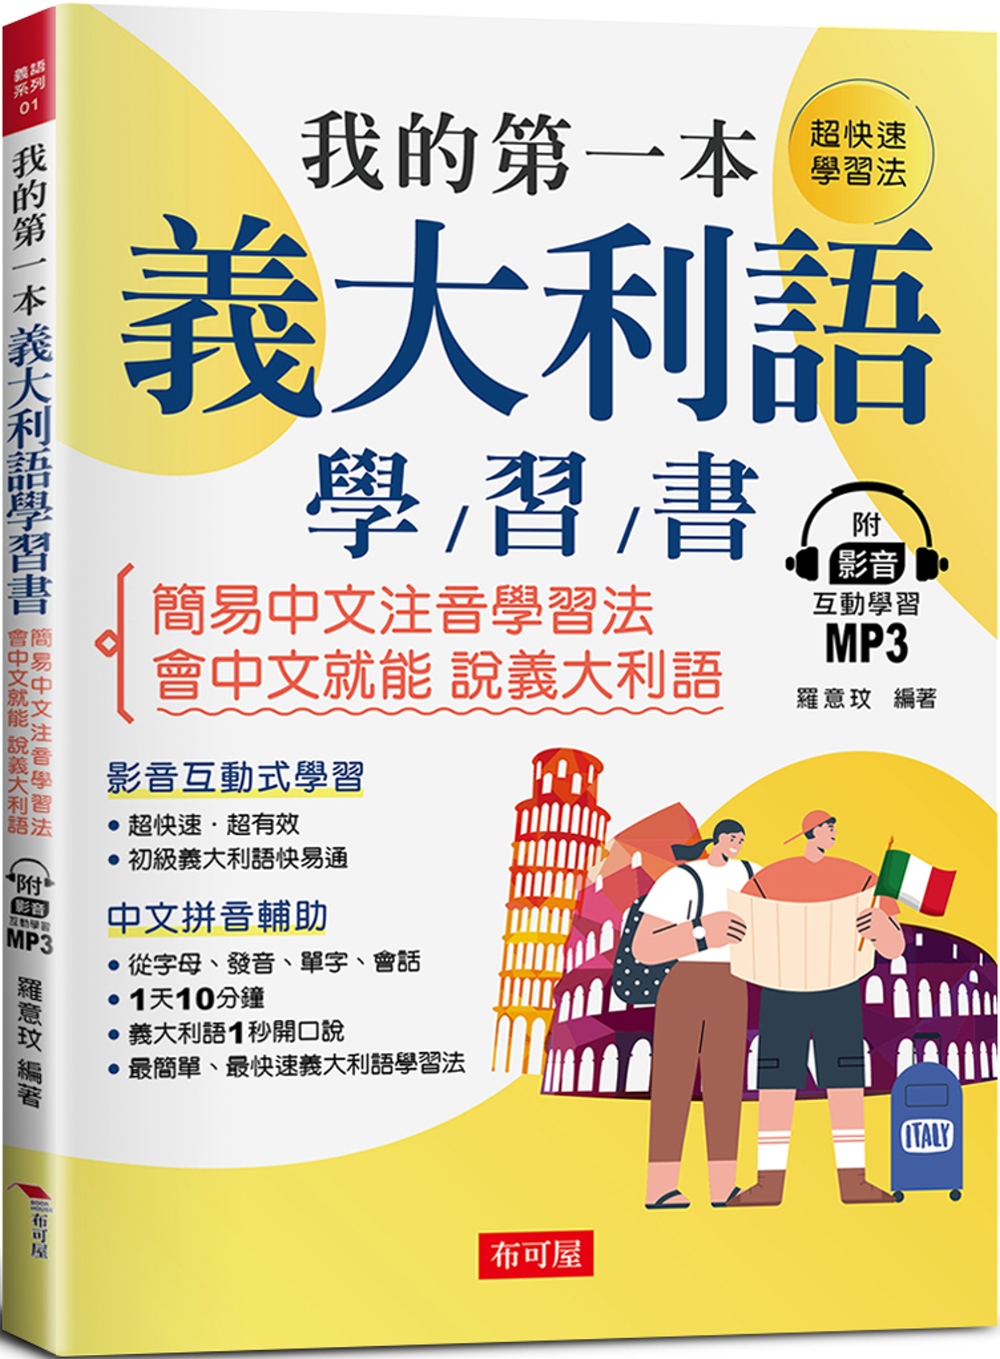 我的第一本義大利語學習書：簡易中文注音學習法 會中文就能說義...